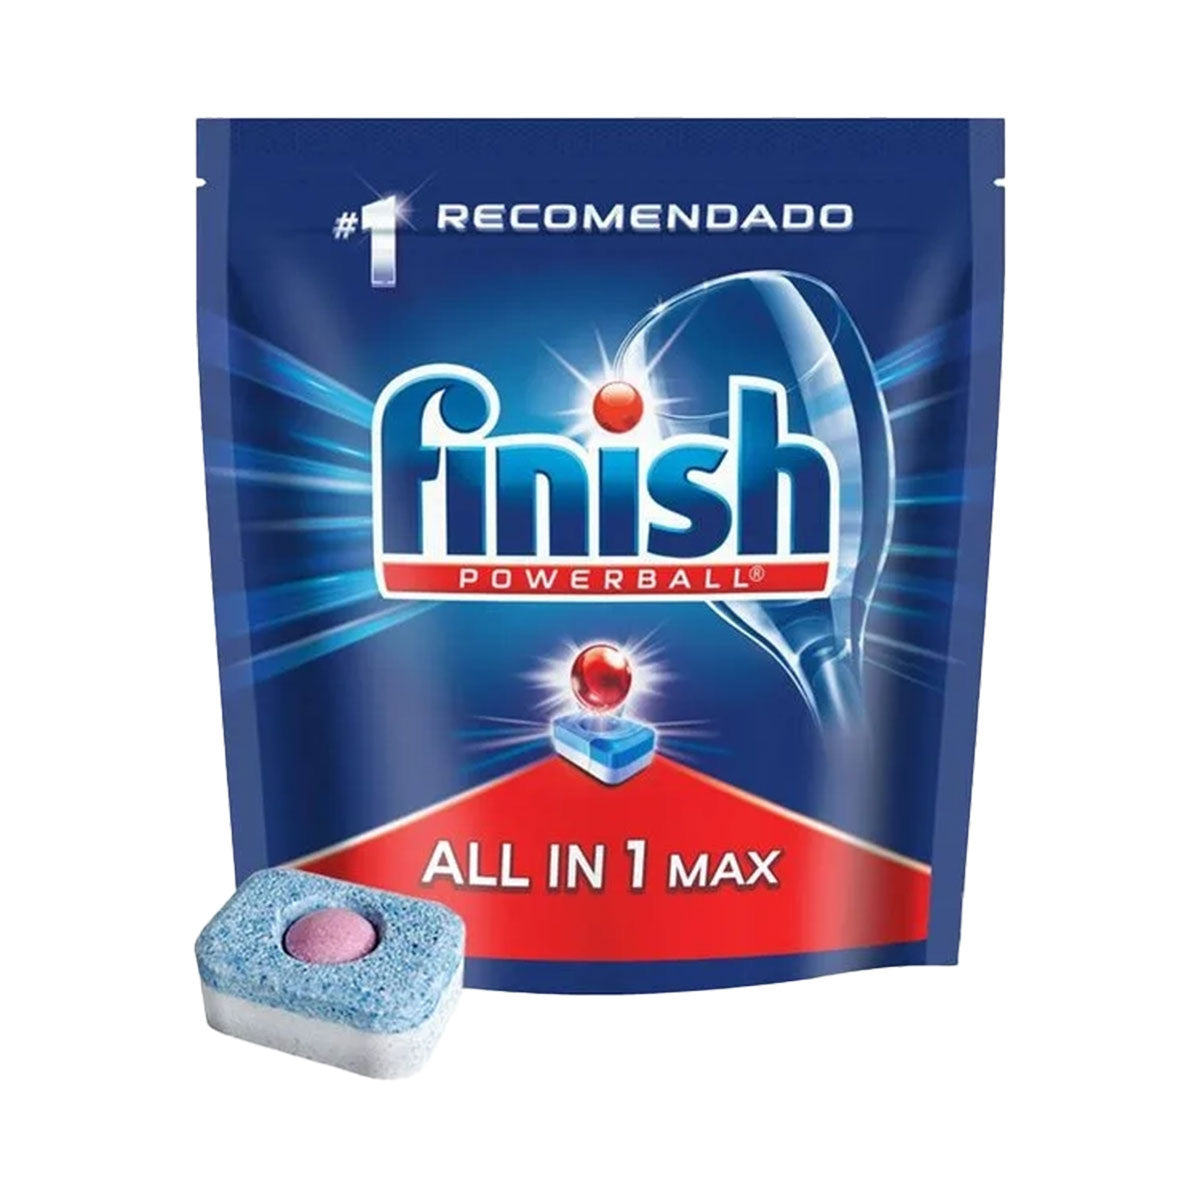 Detergente lavavajillas en Tabletas Powerball Finish (13 unidades)